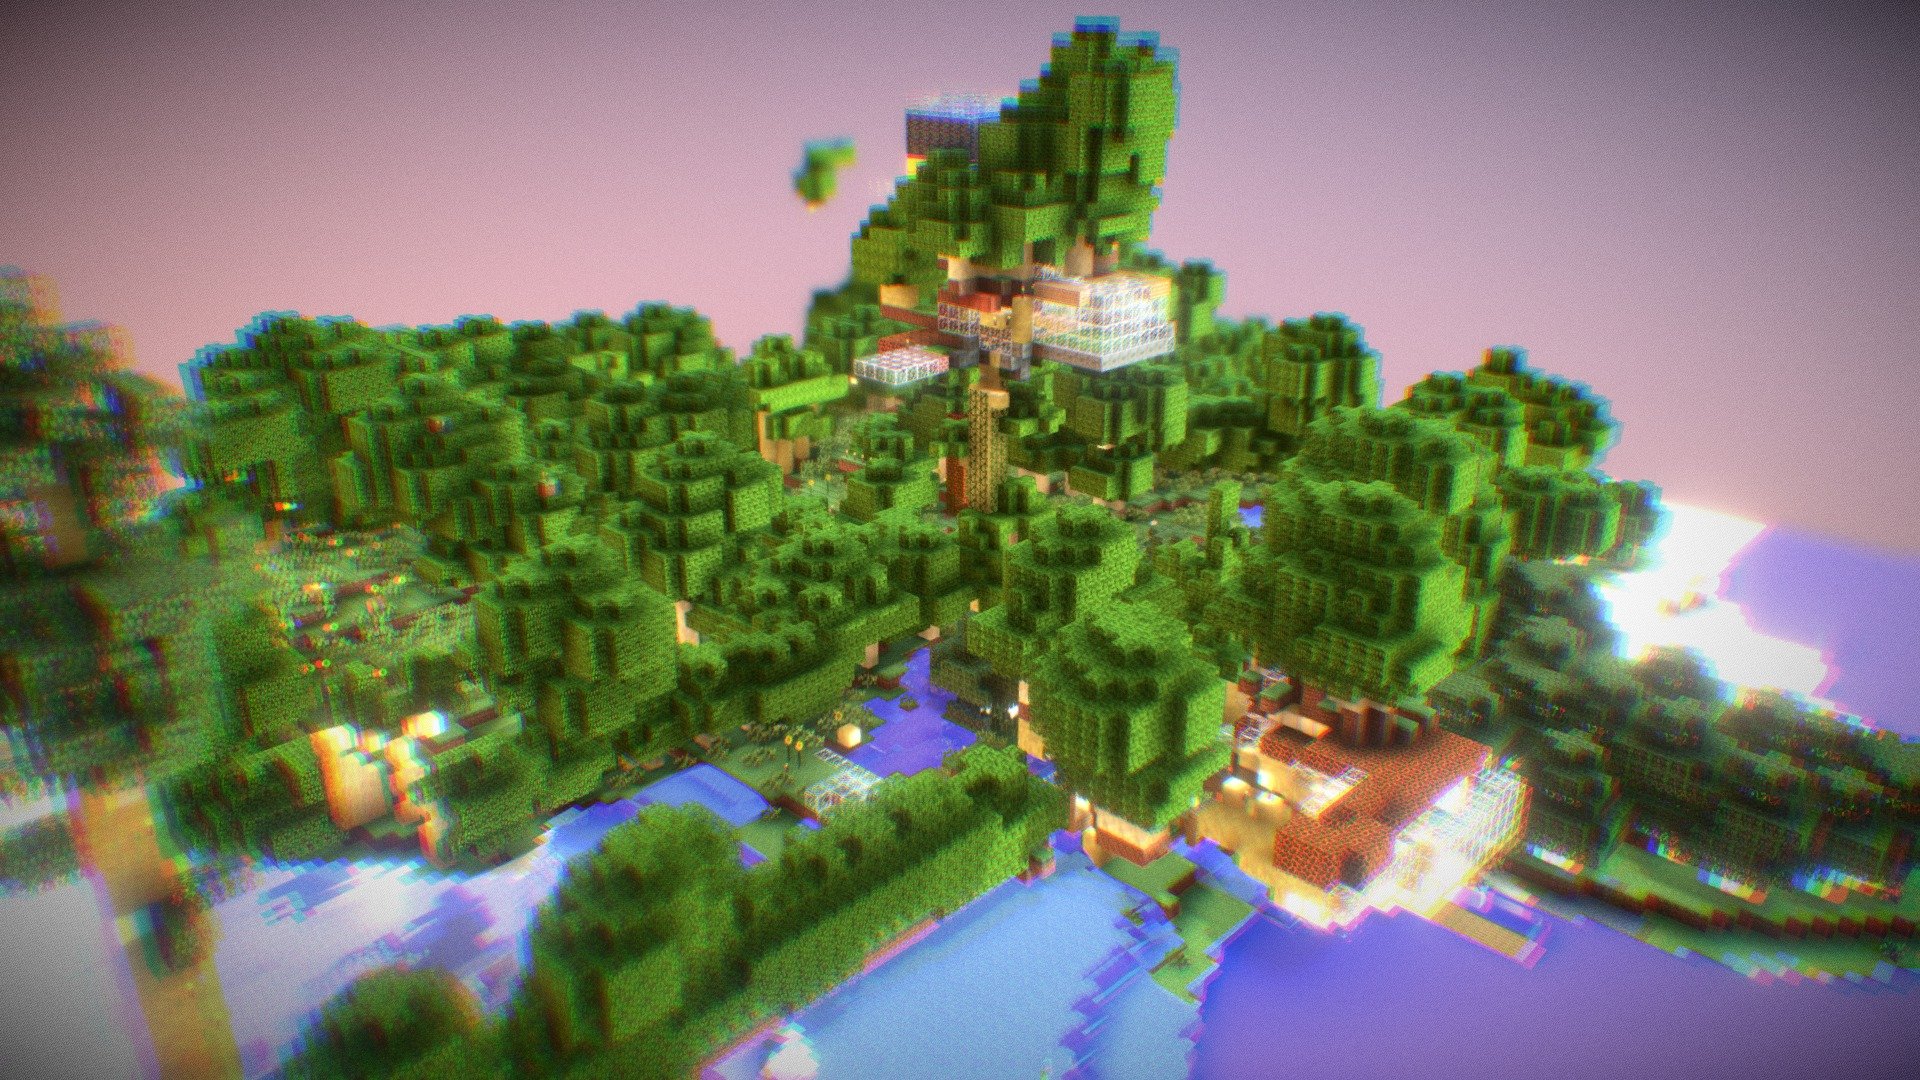 Copy of DERPBI- Minecraft world